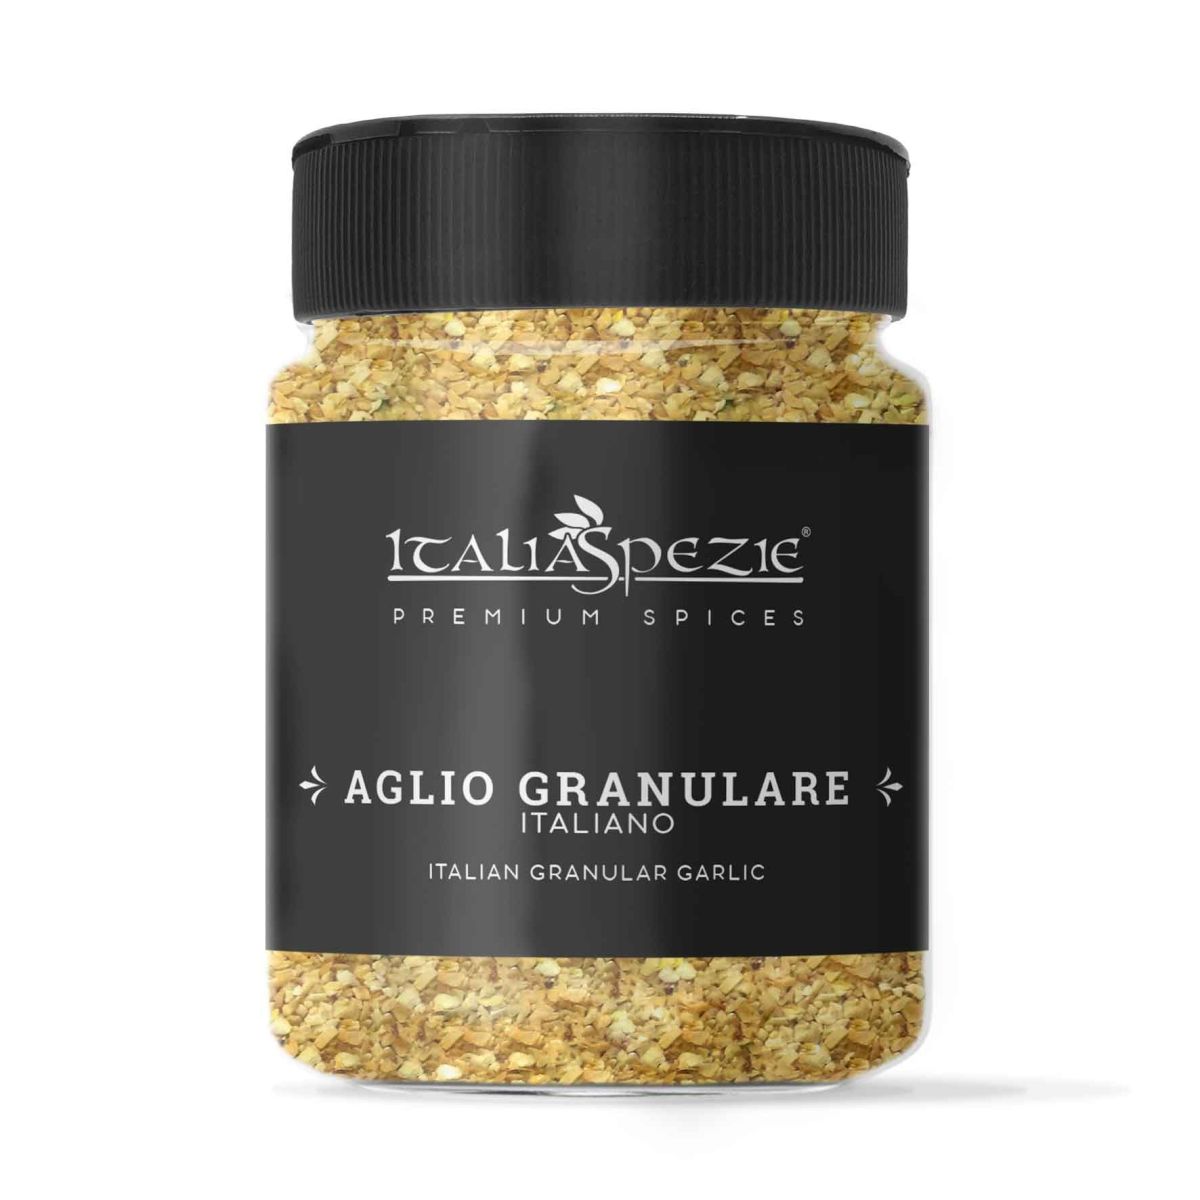 Aglio-granulare-Italiano